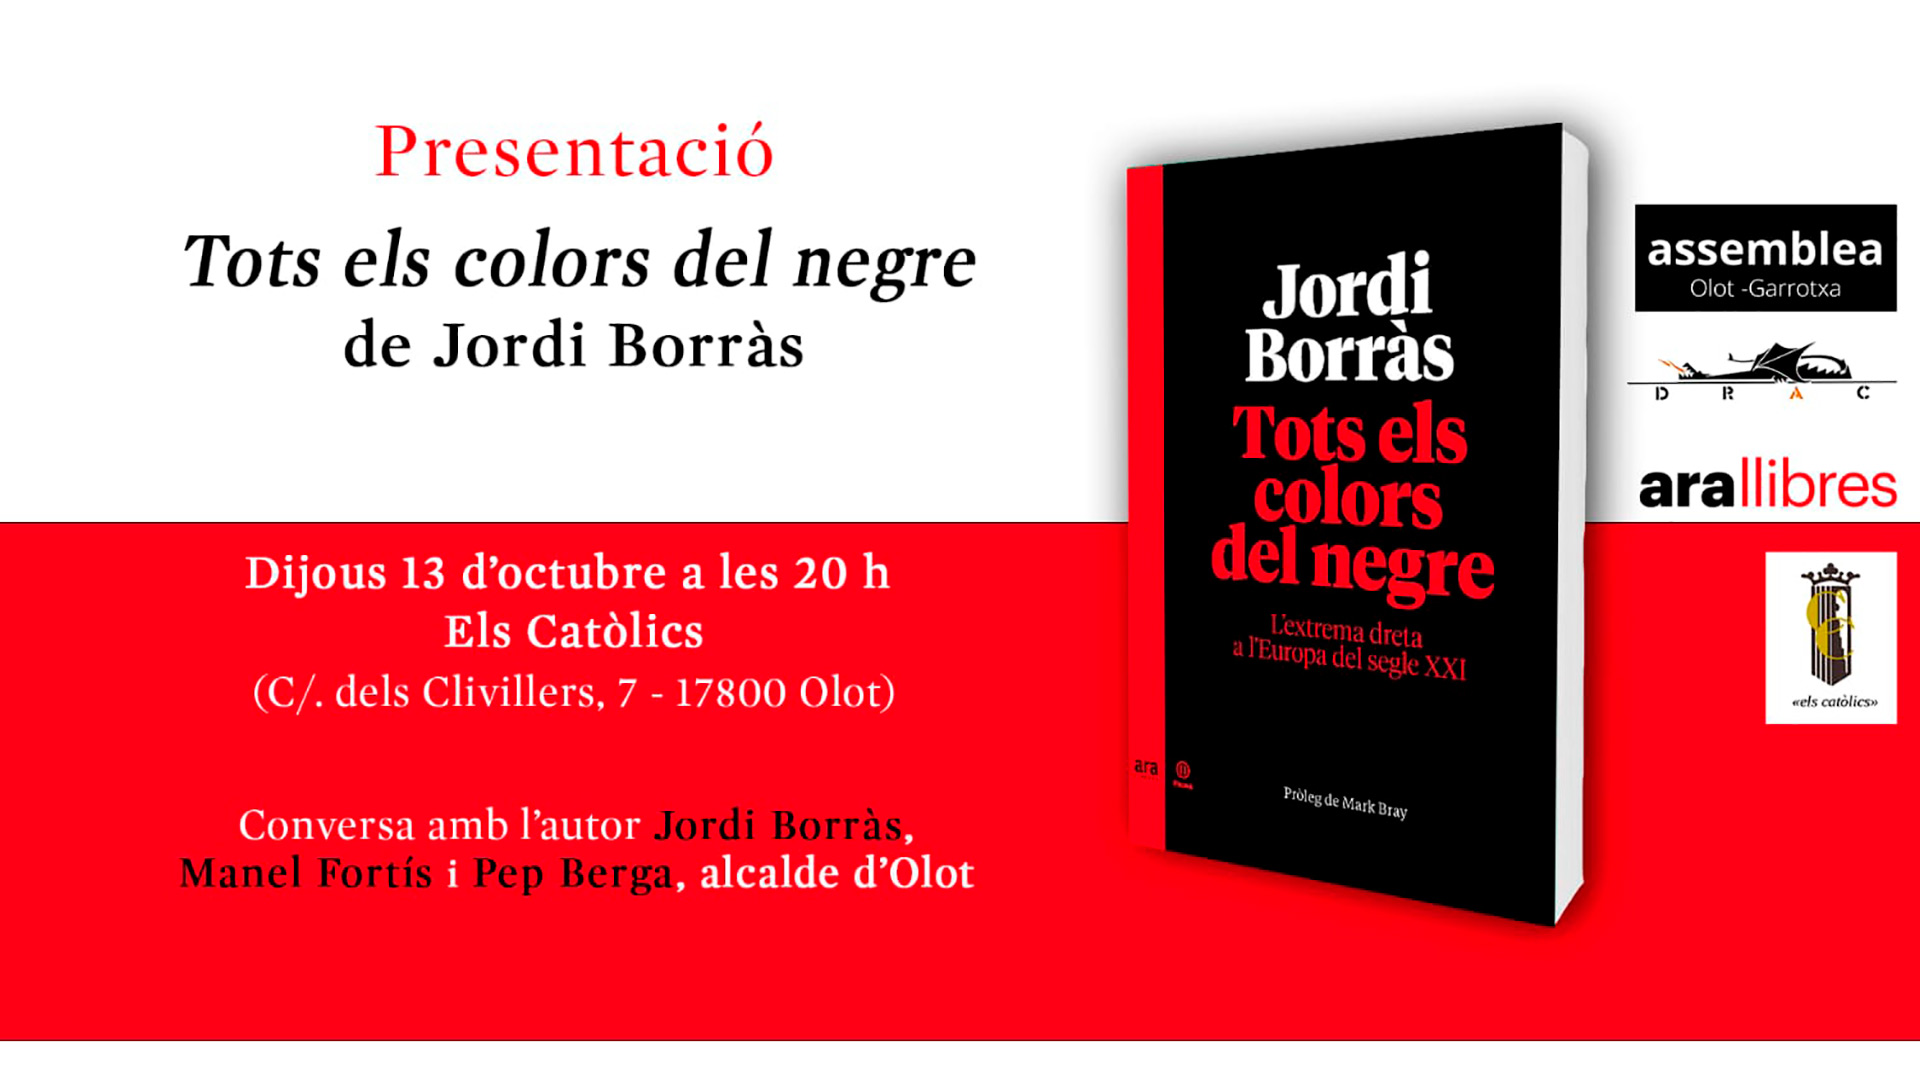 Presentació del llibre ‘Tots els colors del negre’ de Jordi Borràs